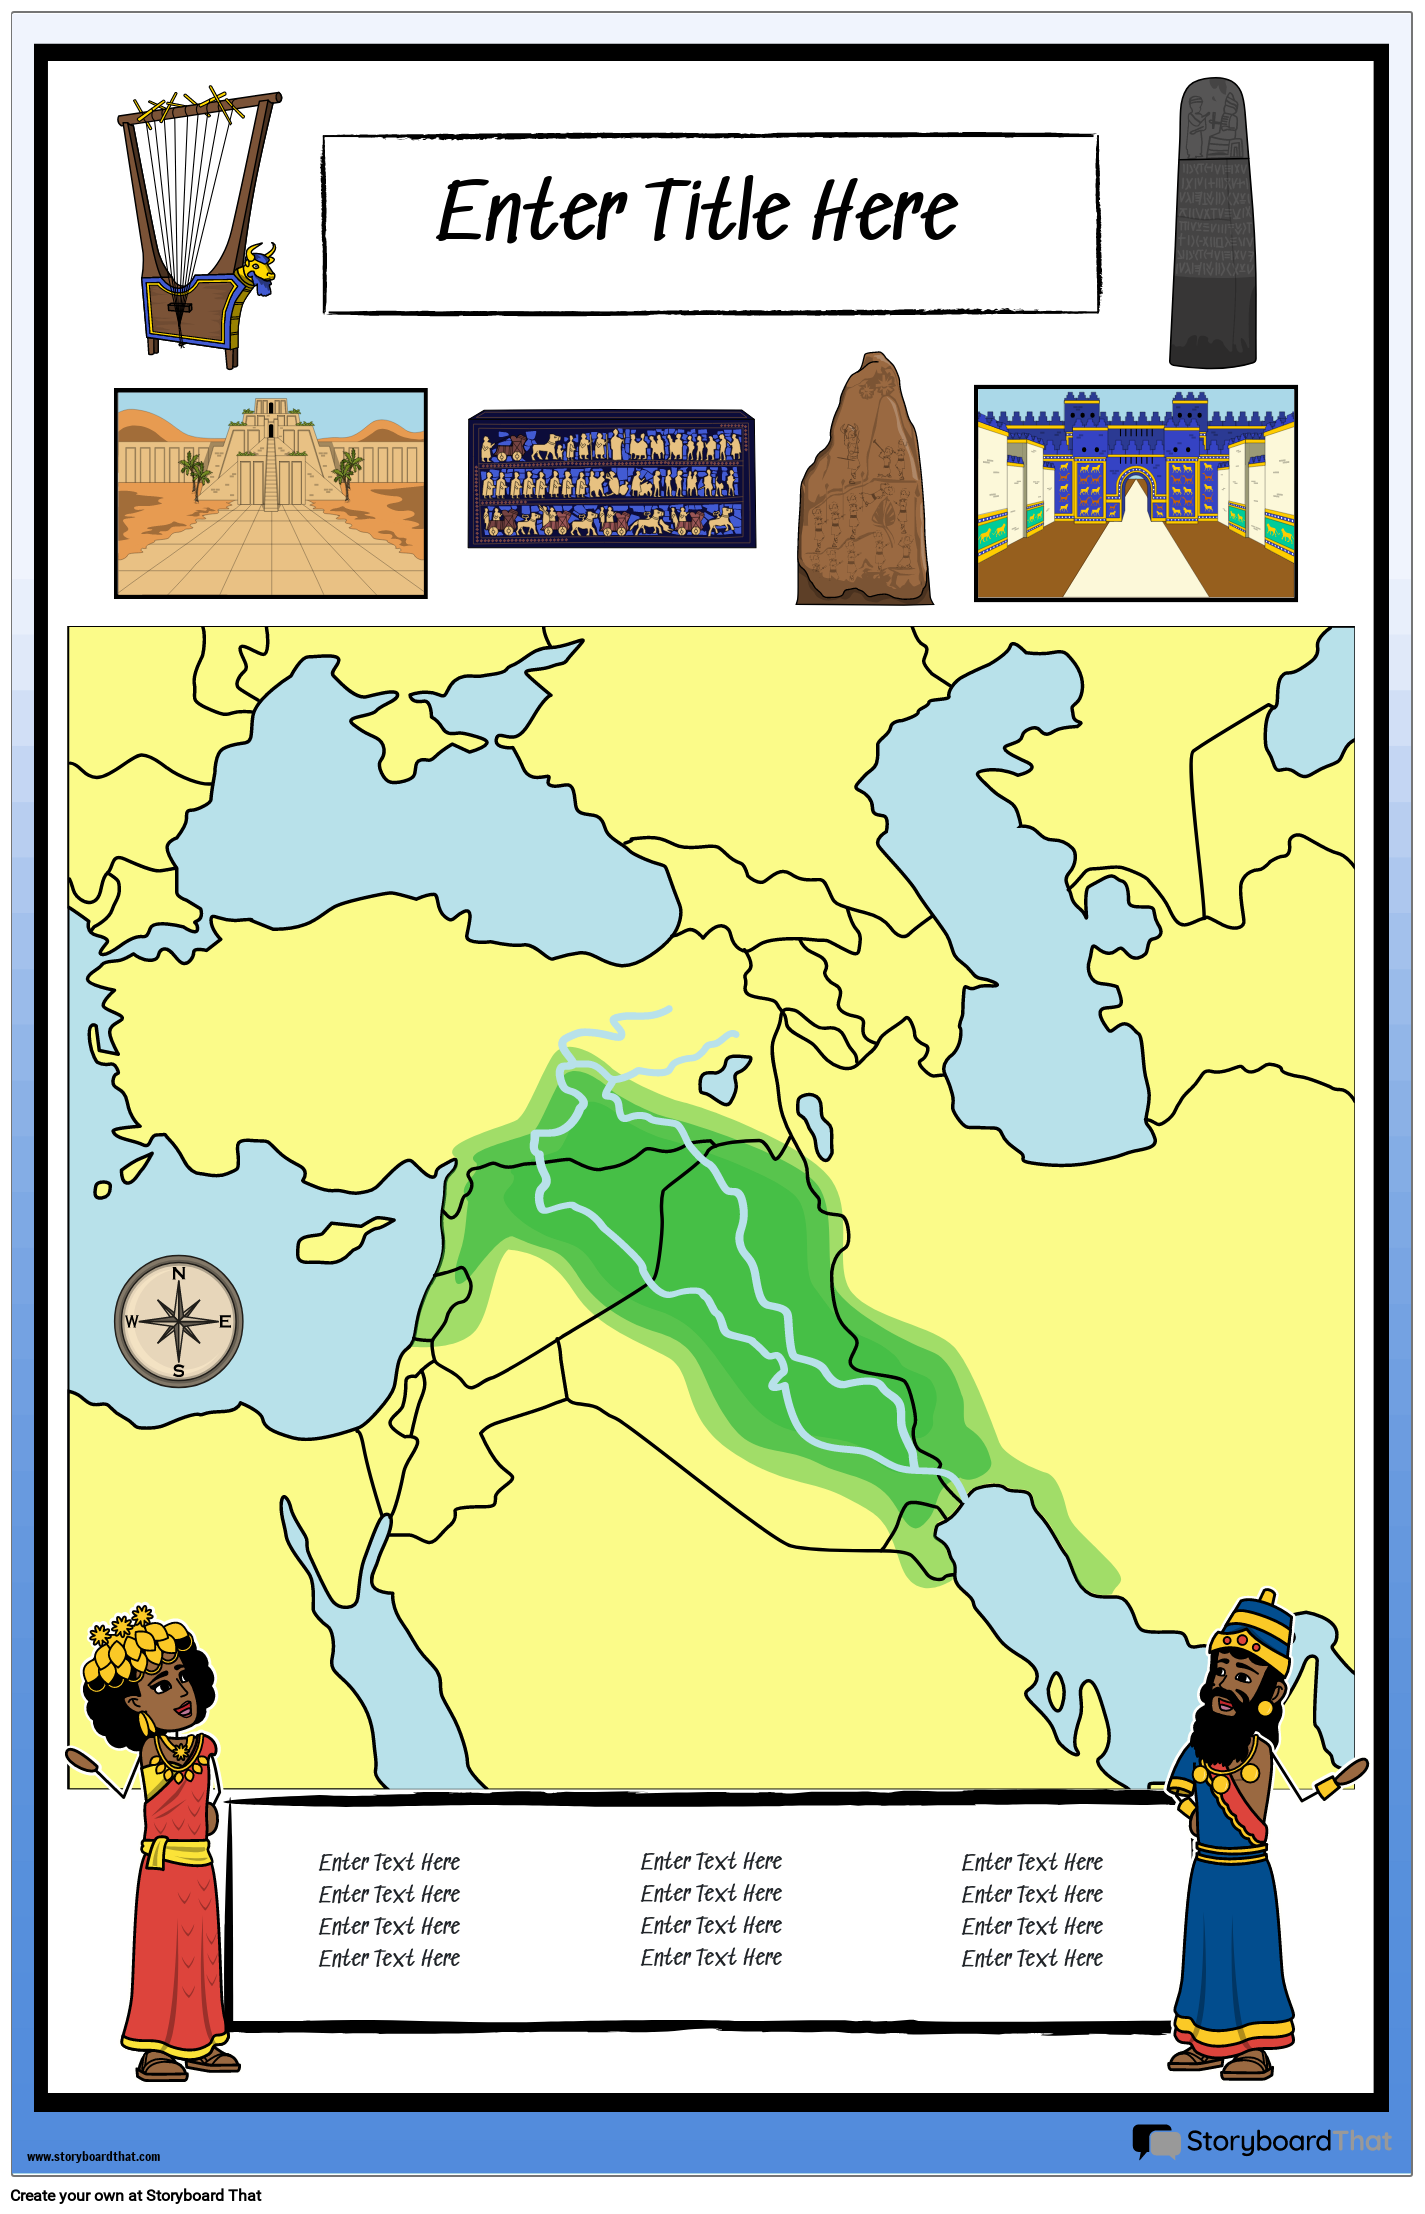 Karttajuliste 35 Värimuotokuva Muinainen Mesopotamia